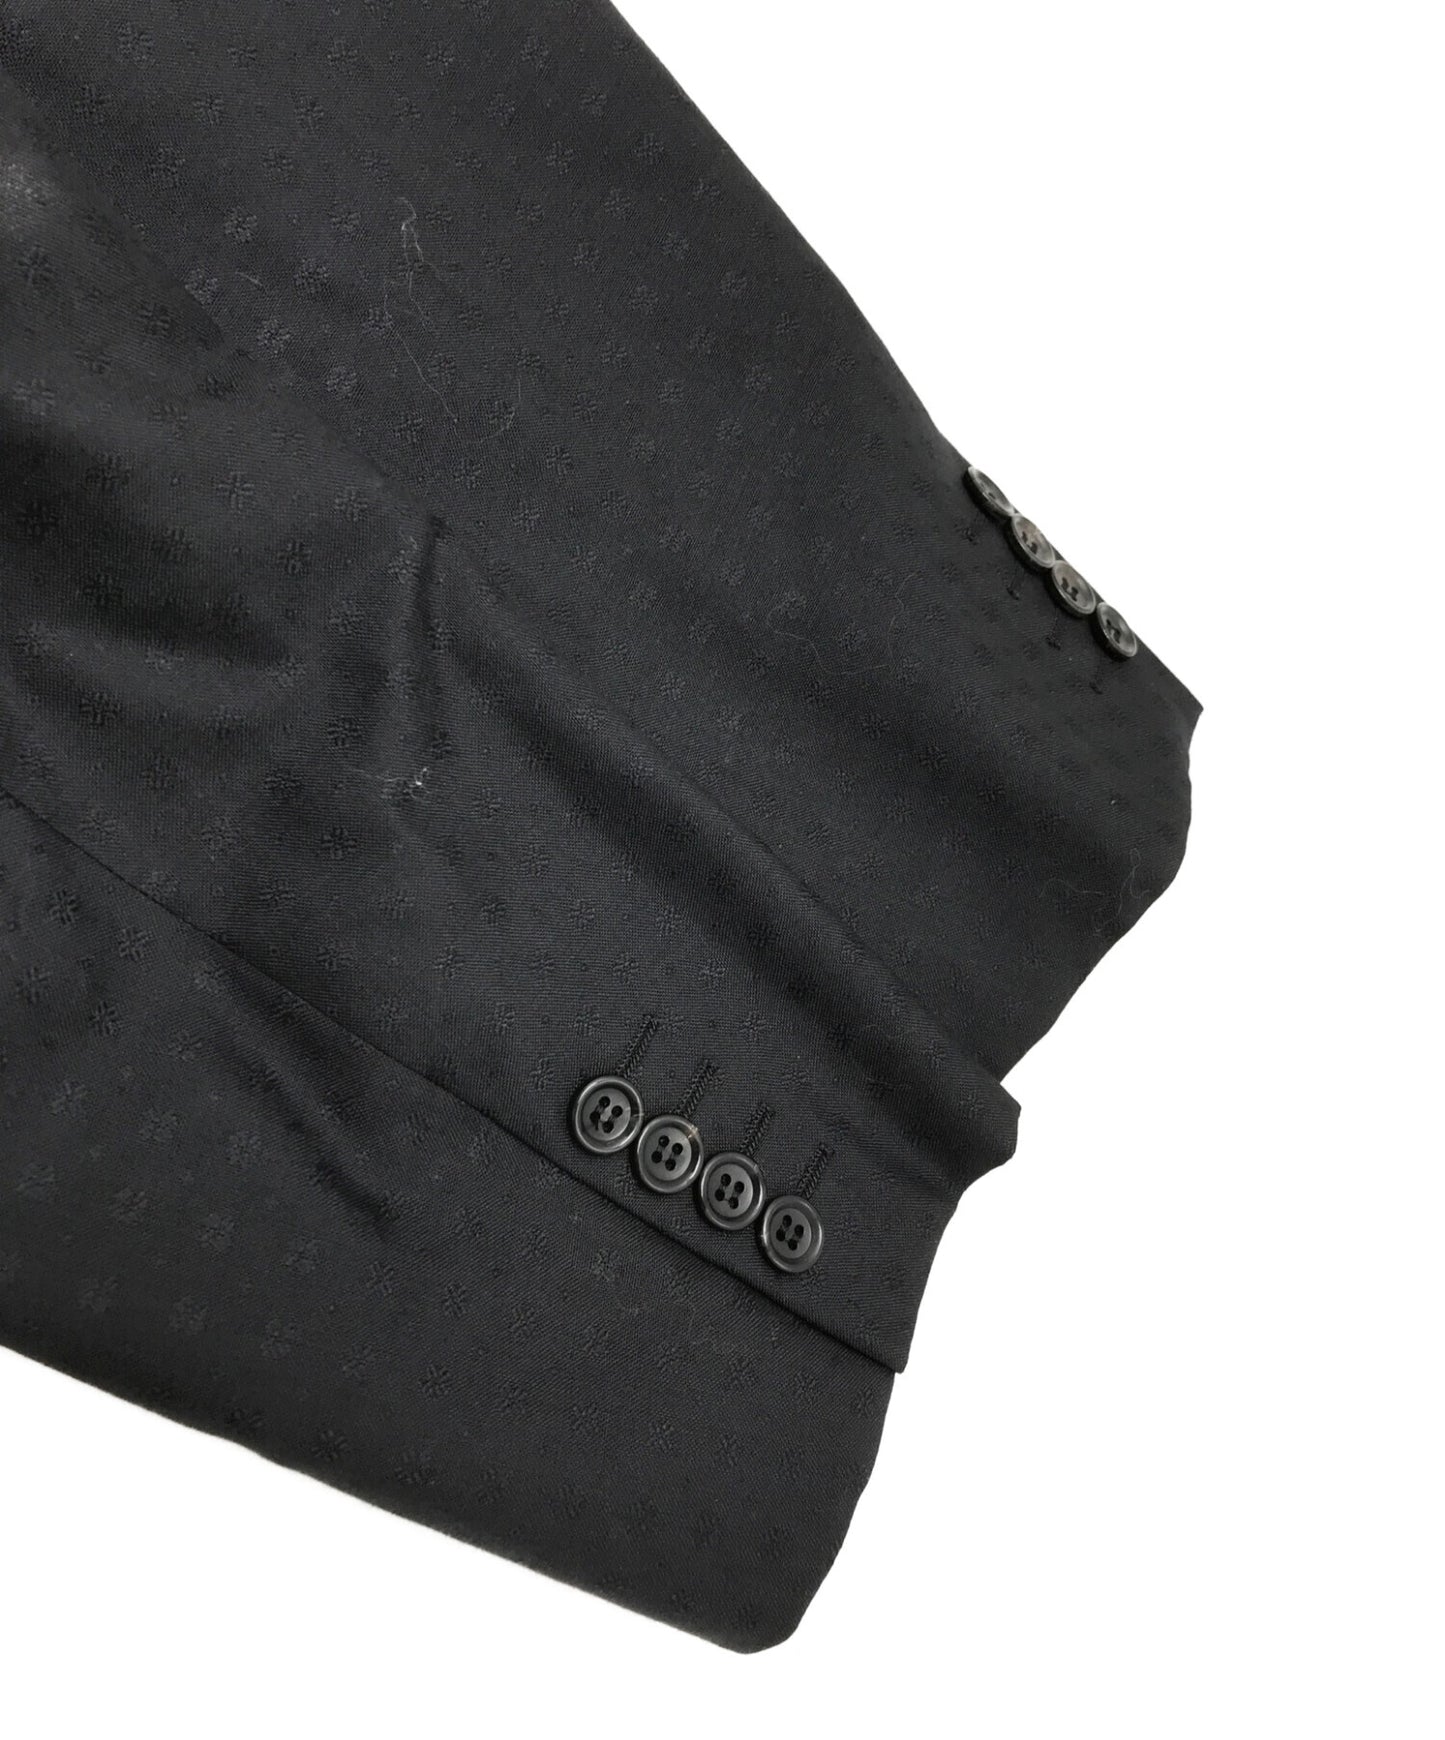 [Pre-owned] COMME des GARCONS HOMME DEUX Reconstructed Tailored Jacket DE-J025